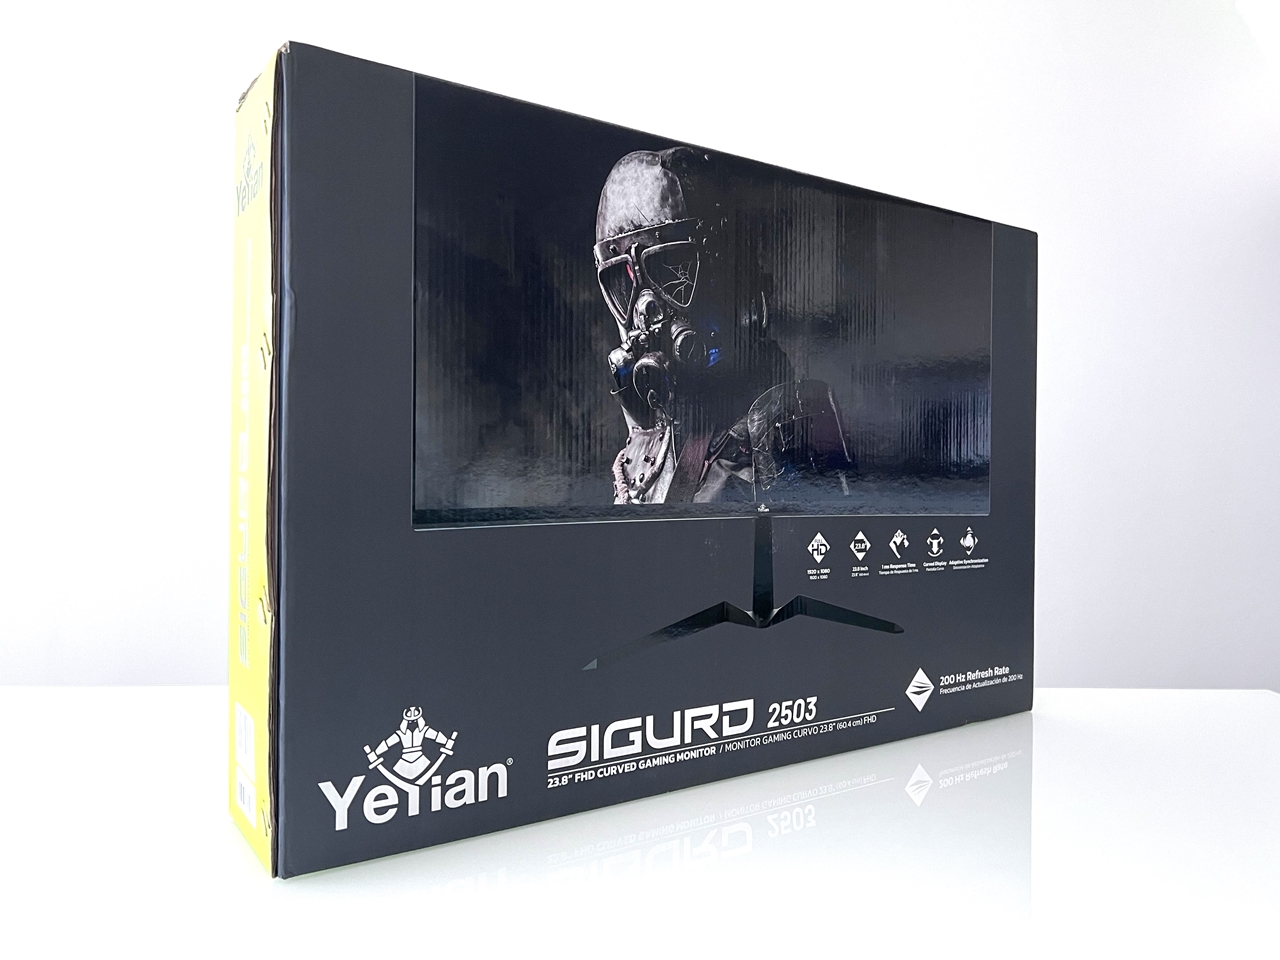 Yeyian Sigurd Series 2503 23.8 LED FullHD 200Hz FreeSync/G-Sync